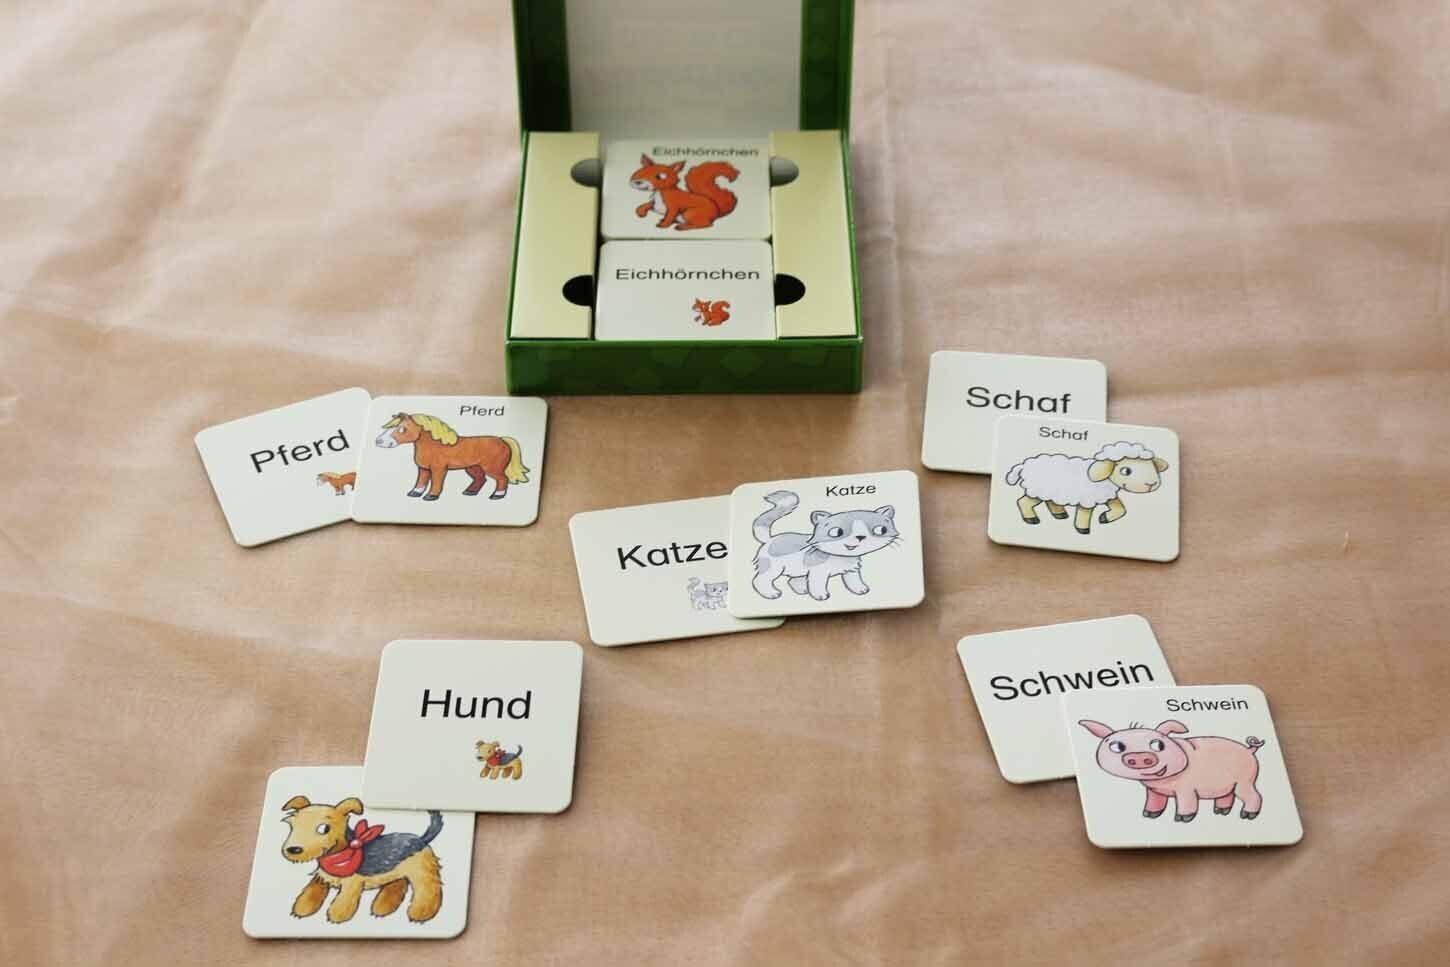 Bild: 9783785585870 | Mein Bildermaus-Memo - Tiere (Kinderspiel) | Loewe Lernen und Rätseln